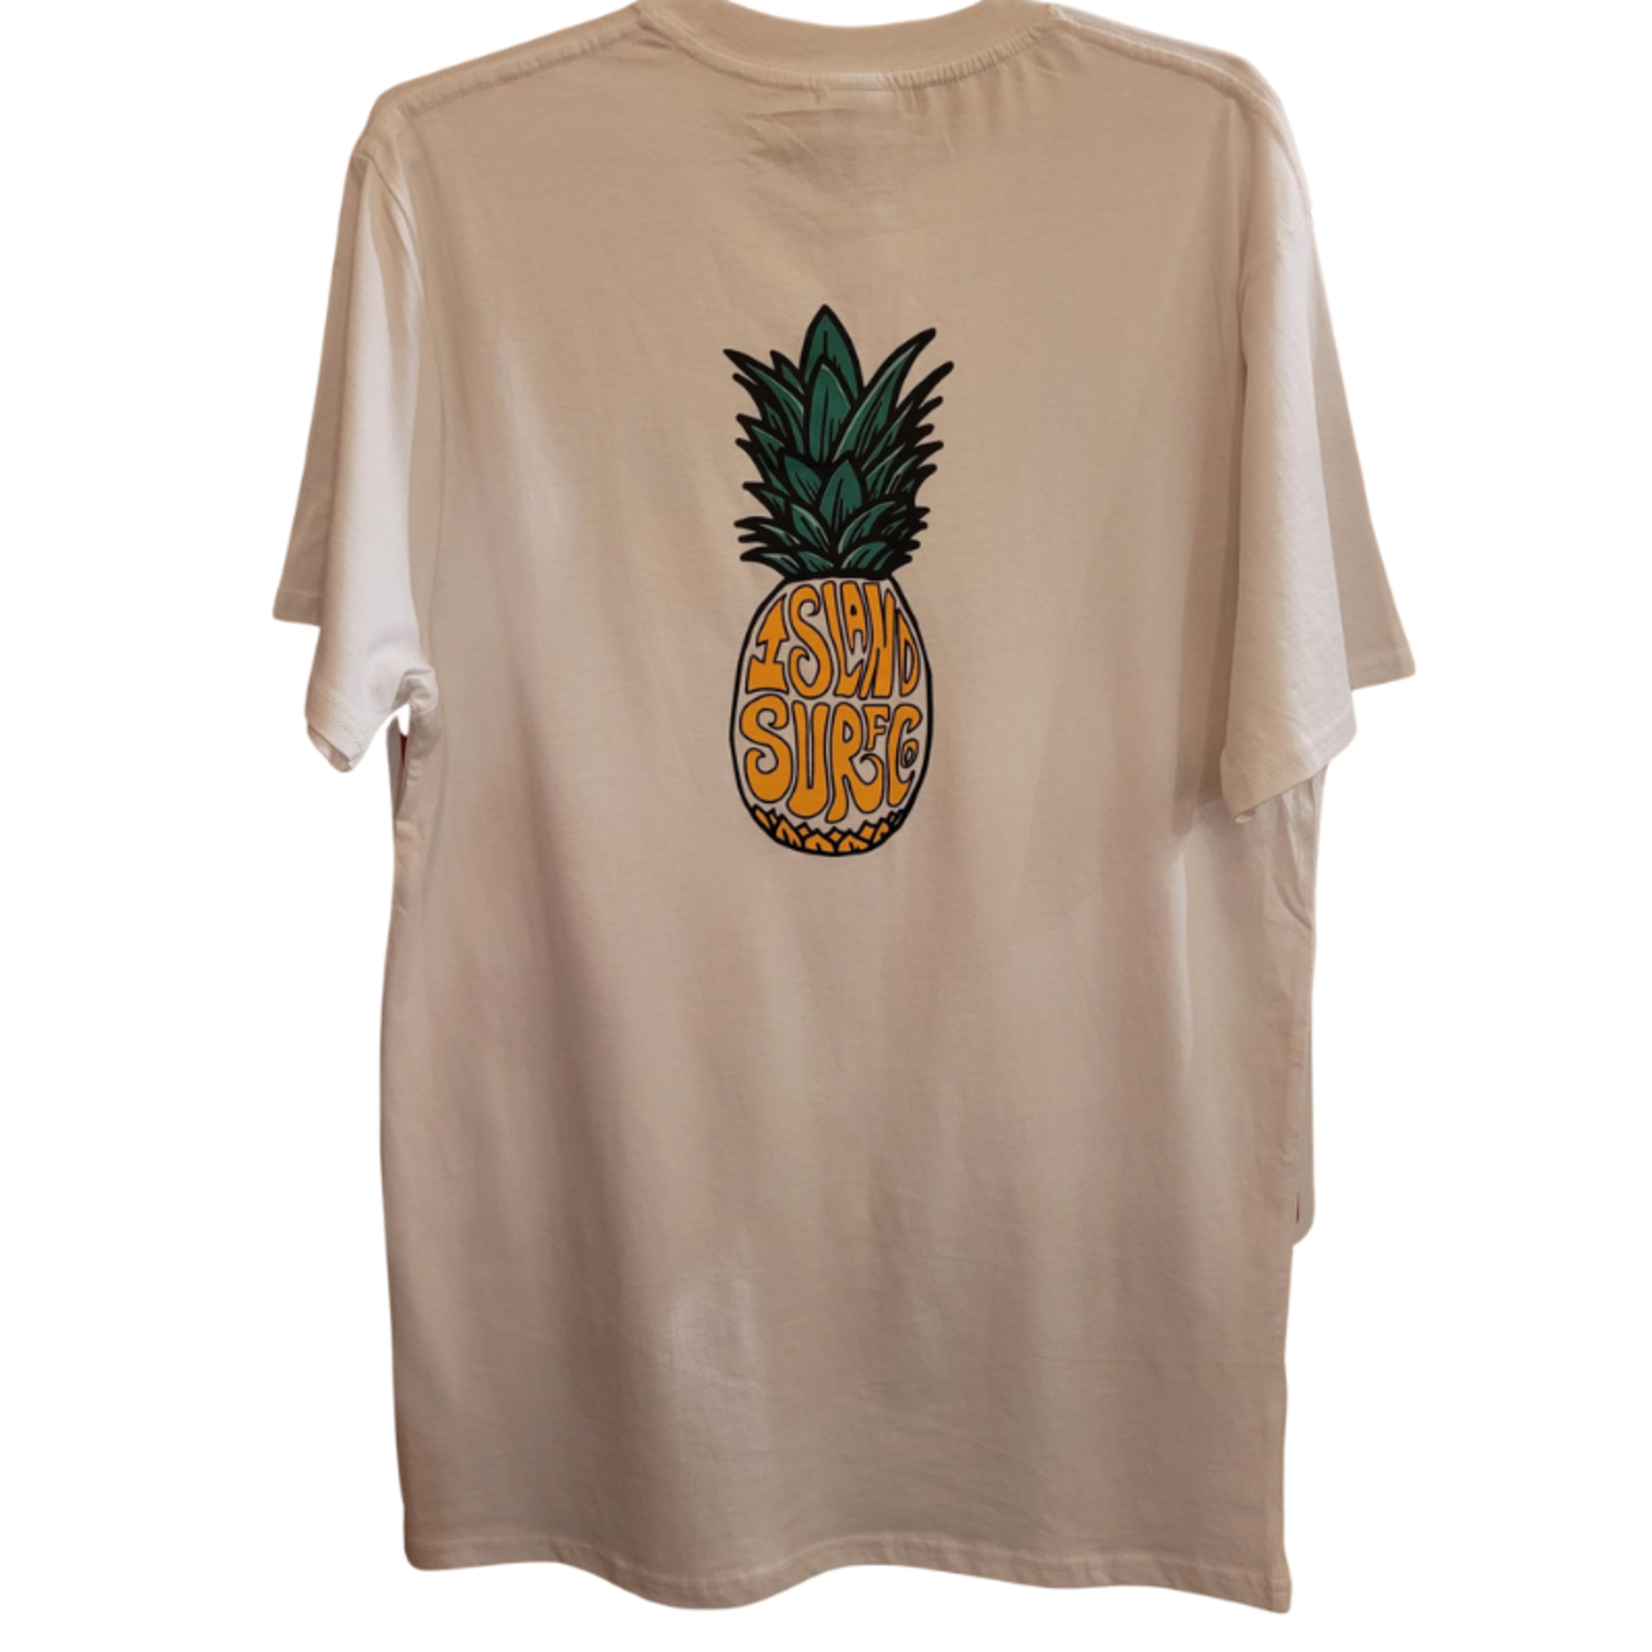 Island Surf Company Island Surf Co. Pineapple T-shirt.